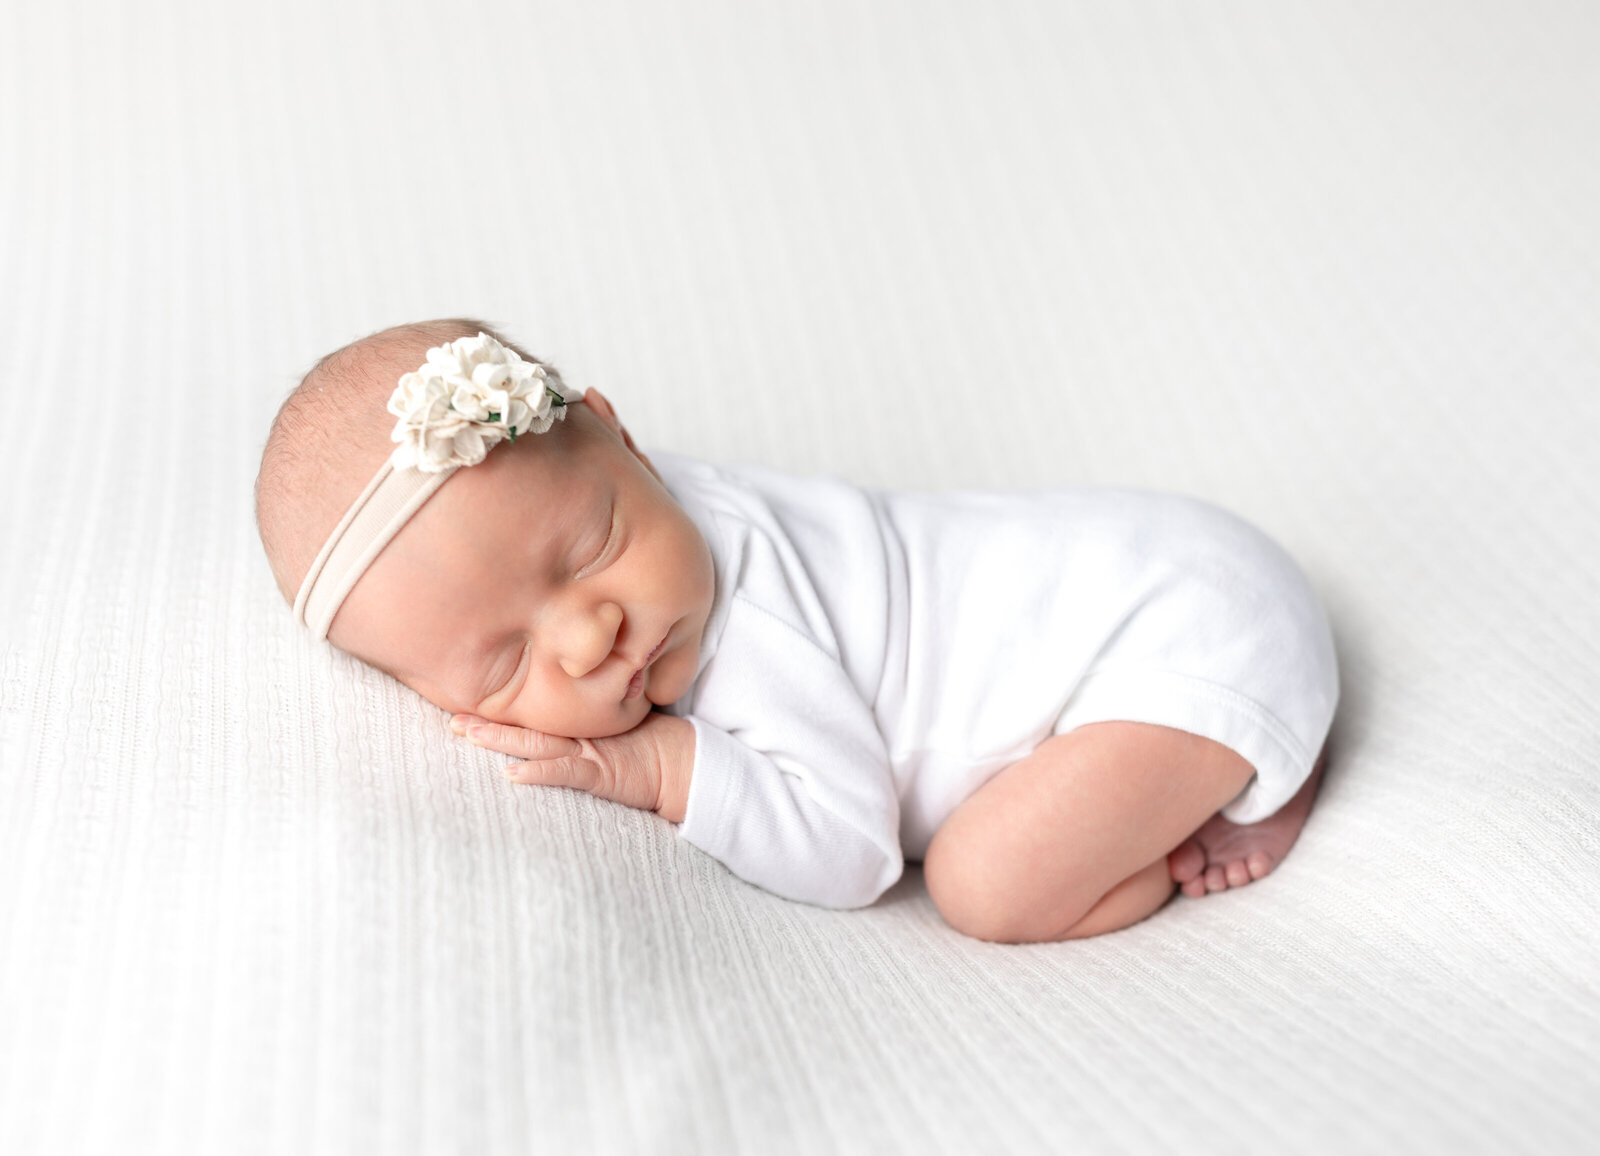 newborn baby girl posed on white fabric for newborn photoshoot